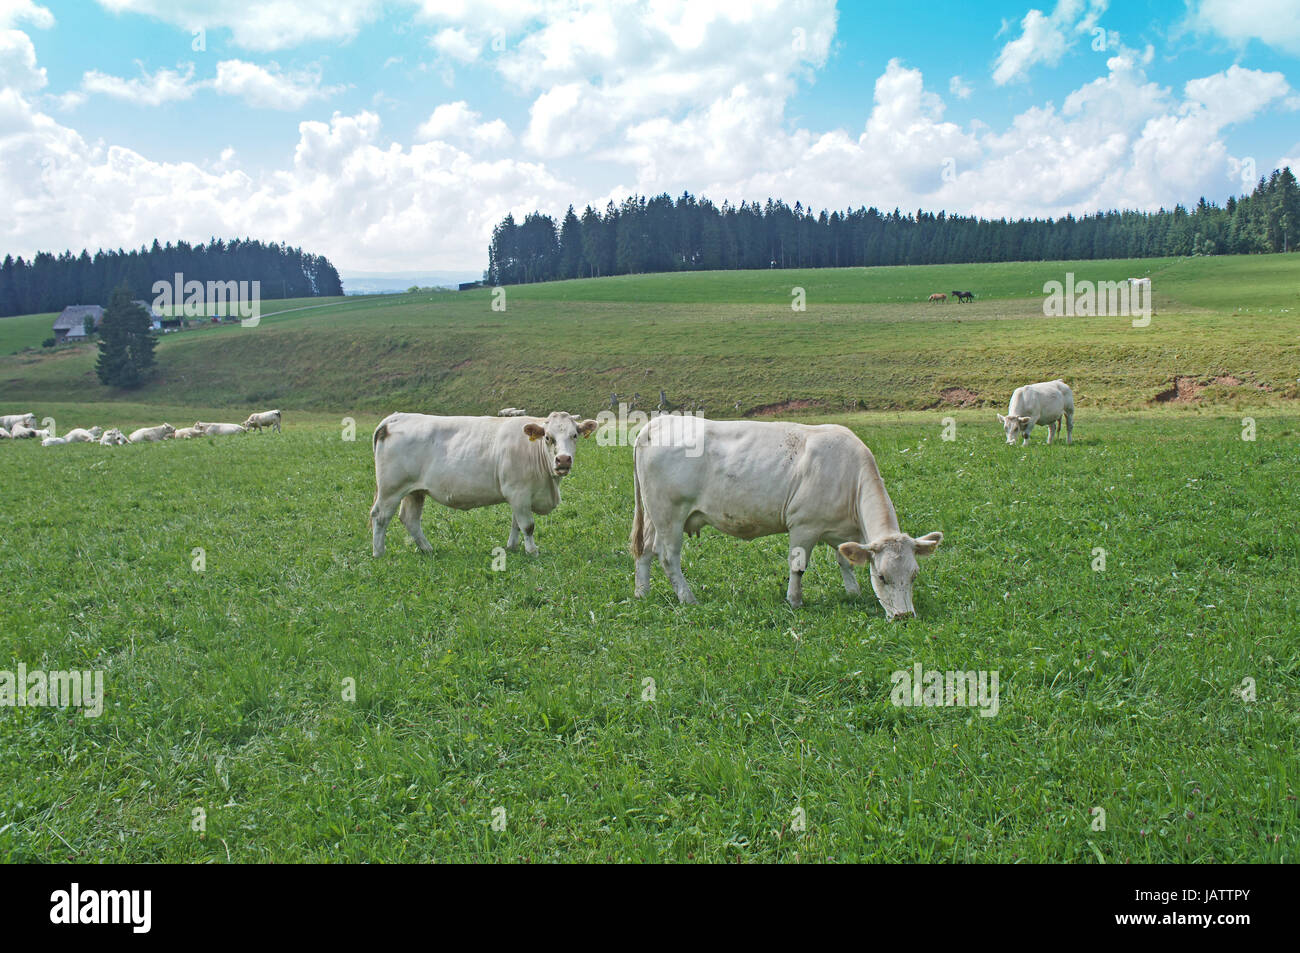 Eine Kuhherde Auf Einer Weide, Weisse Kühe Stehen Und Stück; Weide von Wäldern diesen, Blauer Himmel Mit Weißen Wolken A Kuh Herde auf der Weide, weiße Kühe stehend und liegend, Weide umgeben von Wälder, blauer Himmel mit weißen Wolken Stockfoto